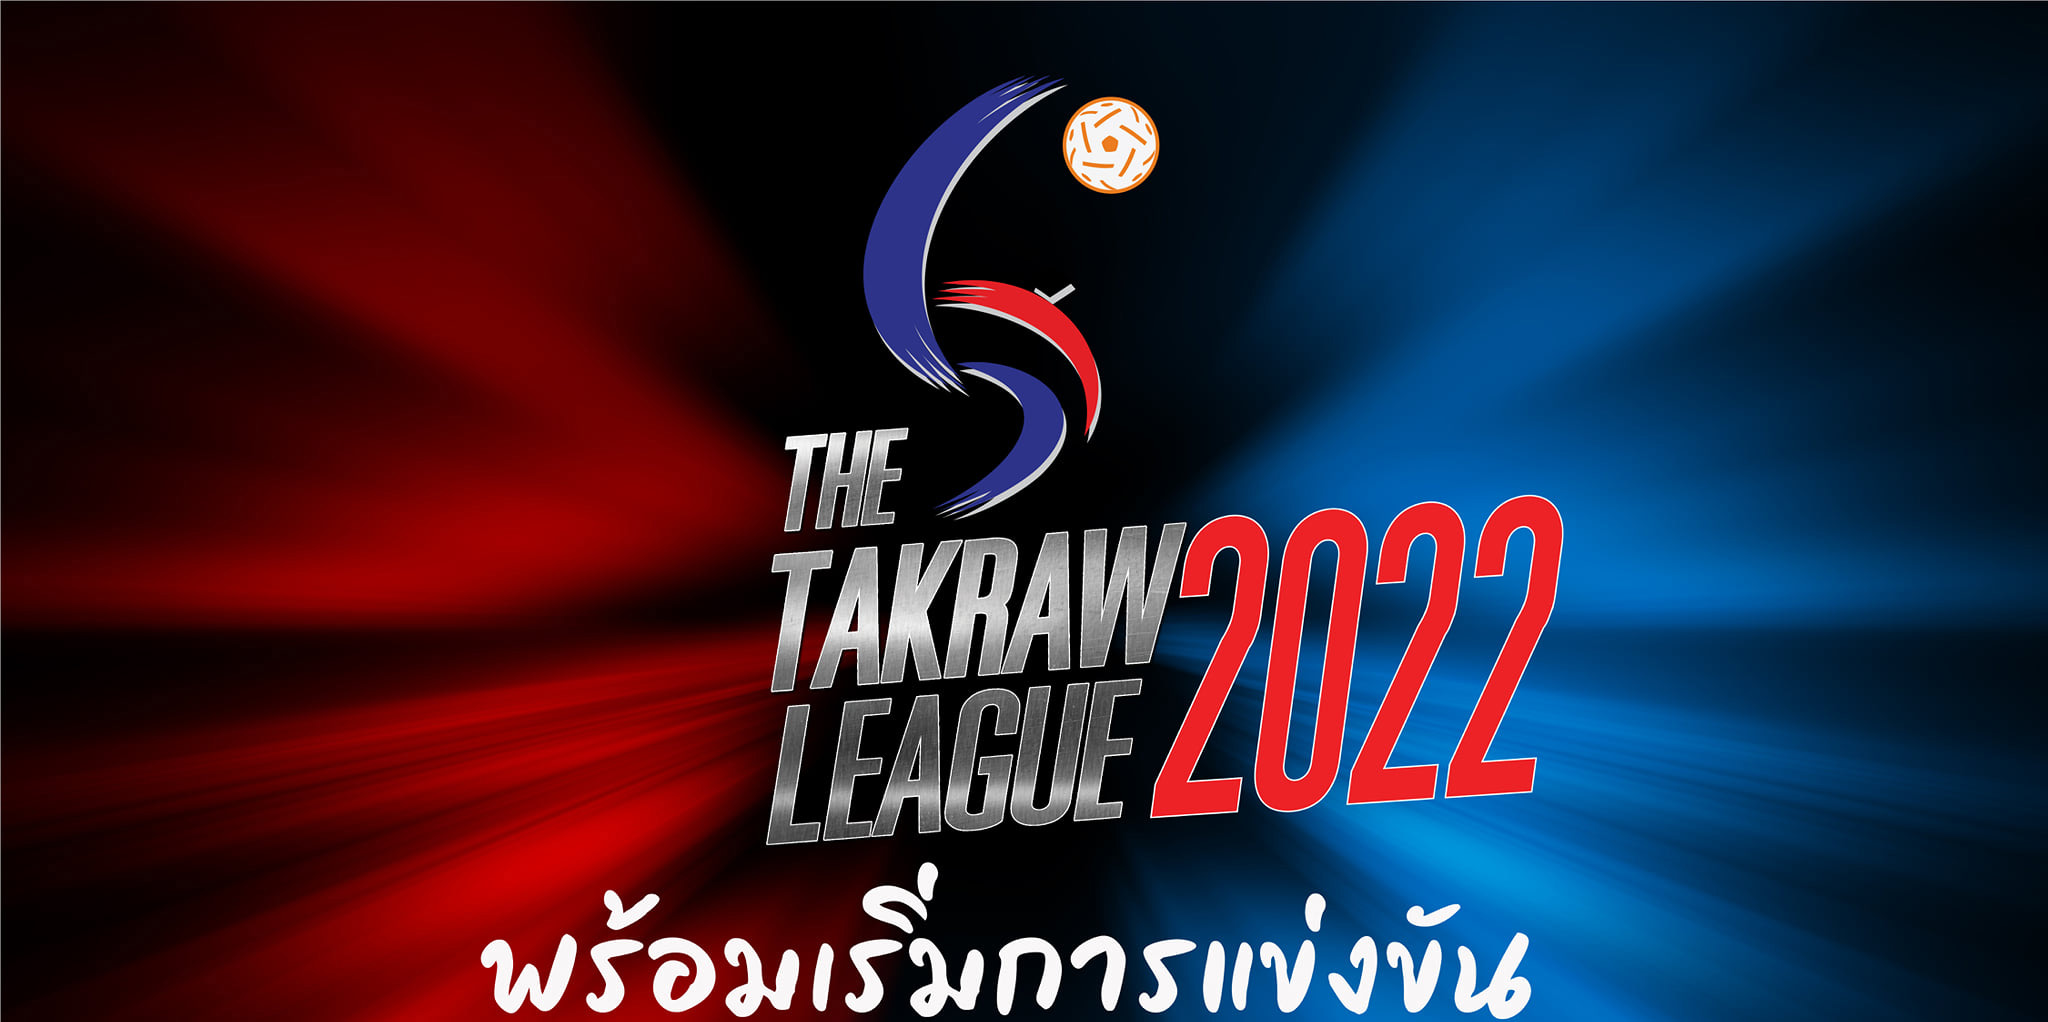 เริ่มเปิดฤดูกาลตะกร้อไทยแลนด์ลีก 2022 ทีมสโมสรใดที่สนใจจะเข้าร่วมการแข่งขัน “ตะกร้อลีก2022”